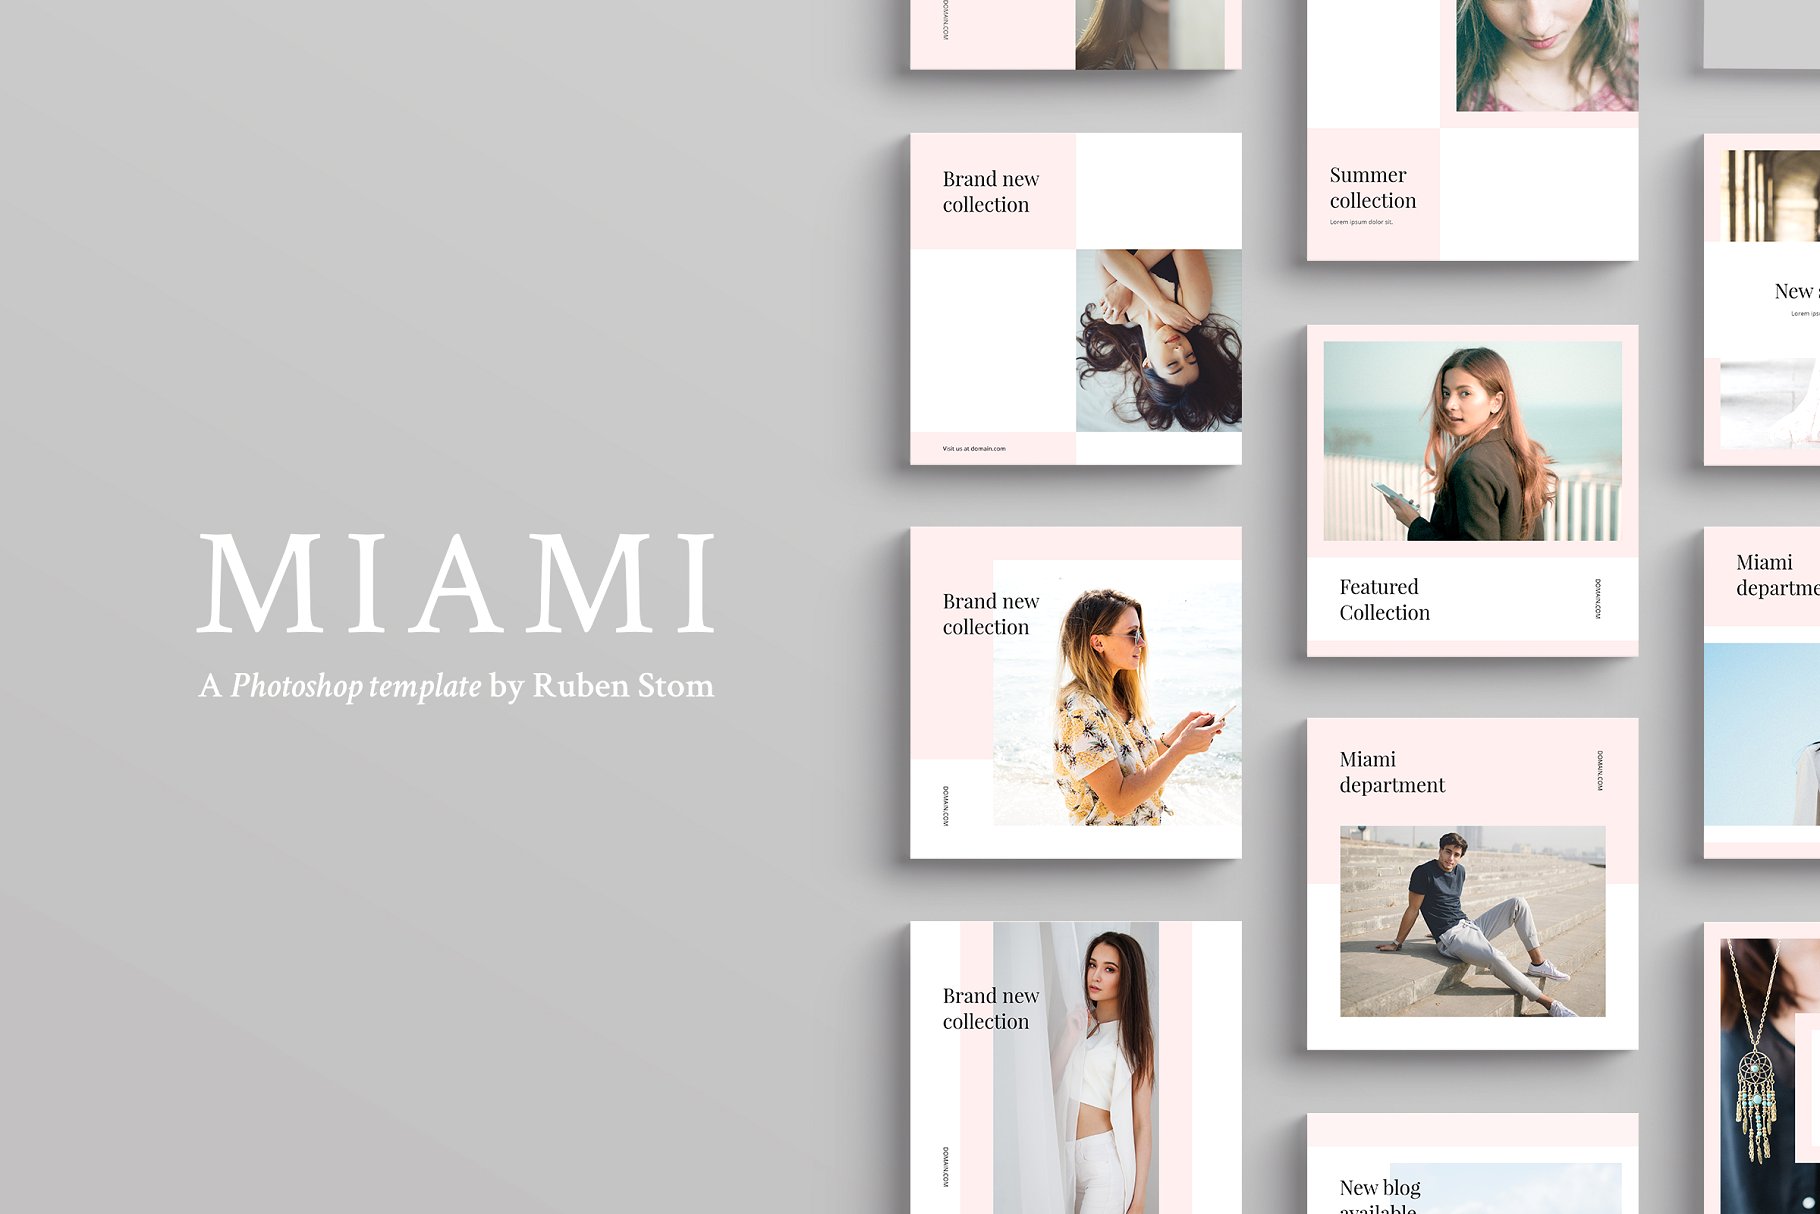 适合多个社交媒体平台的插图配图设计模板素材库精选 Miami Social Media Templates插图